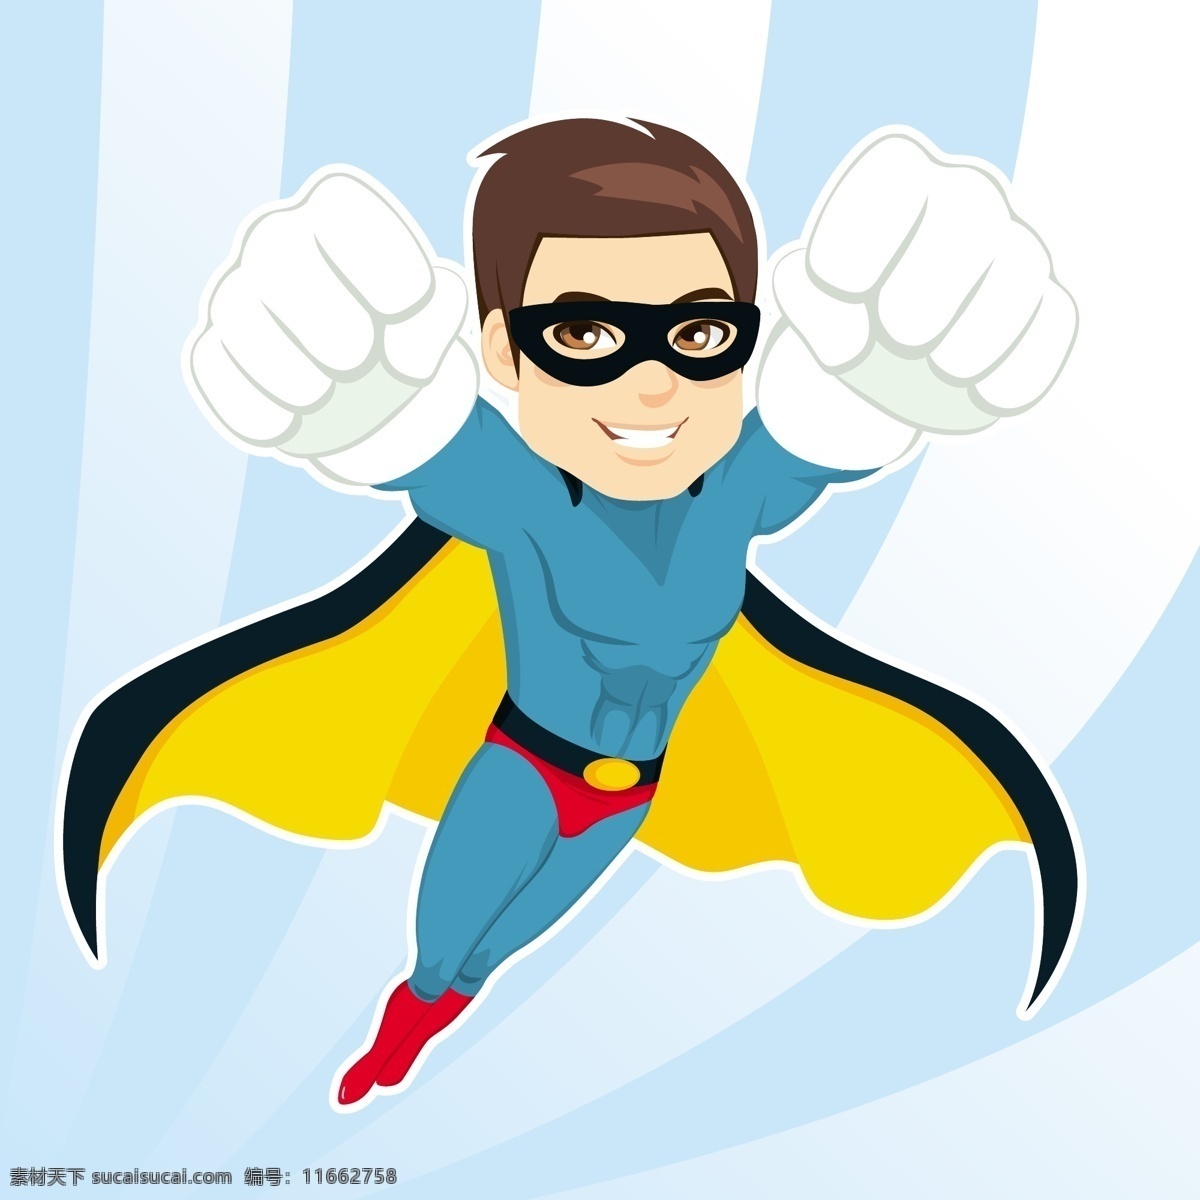 飞翔 超级 英雄 人物 超级英雄 英雄人物 卡通英雄 人物图案 正义英雄 正义卡通人物 插画 日常生活 矢量人物 矢量素材